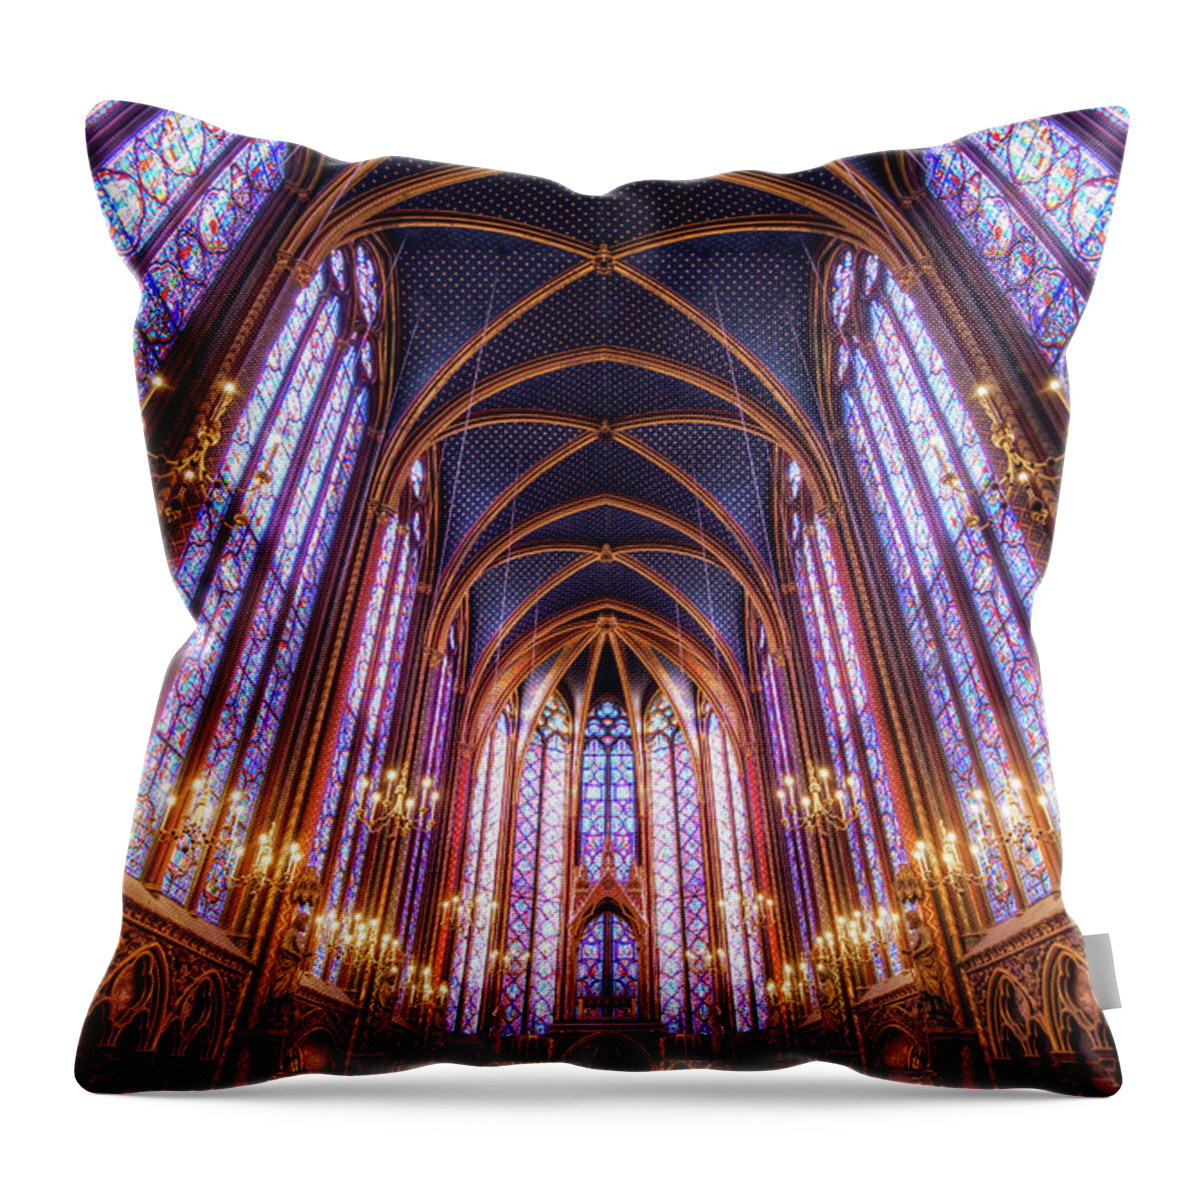 Arch Throw Pillow featuring the photograph La Sainte-chapelle Upper Chapel, Paris by Joe Daniel Price